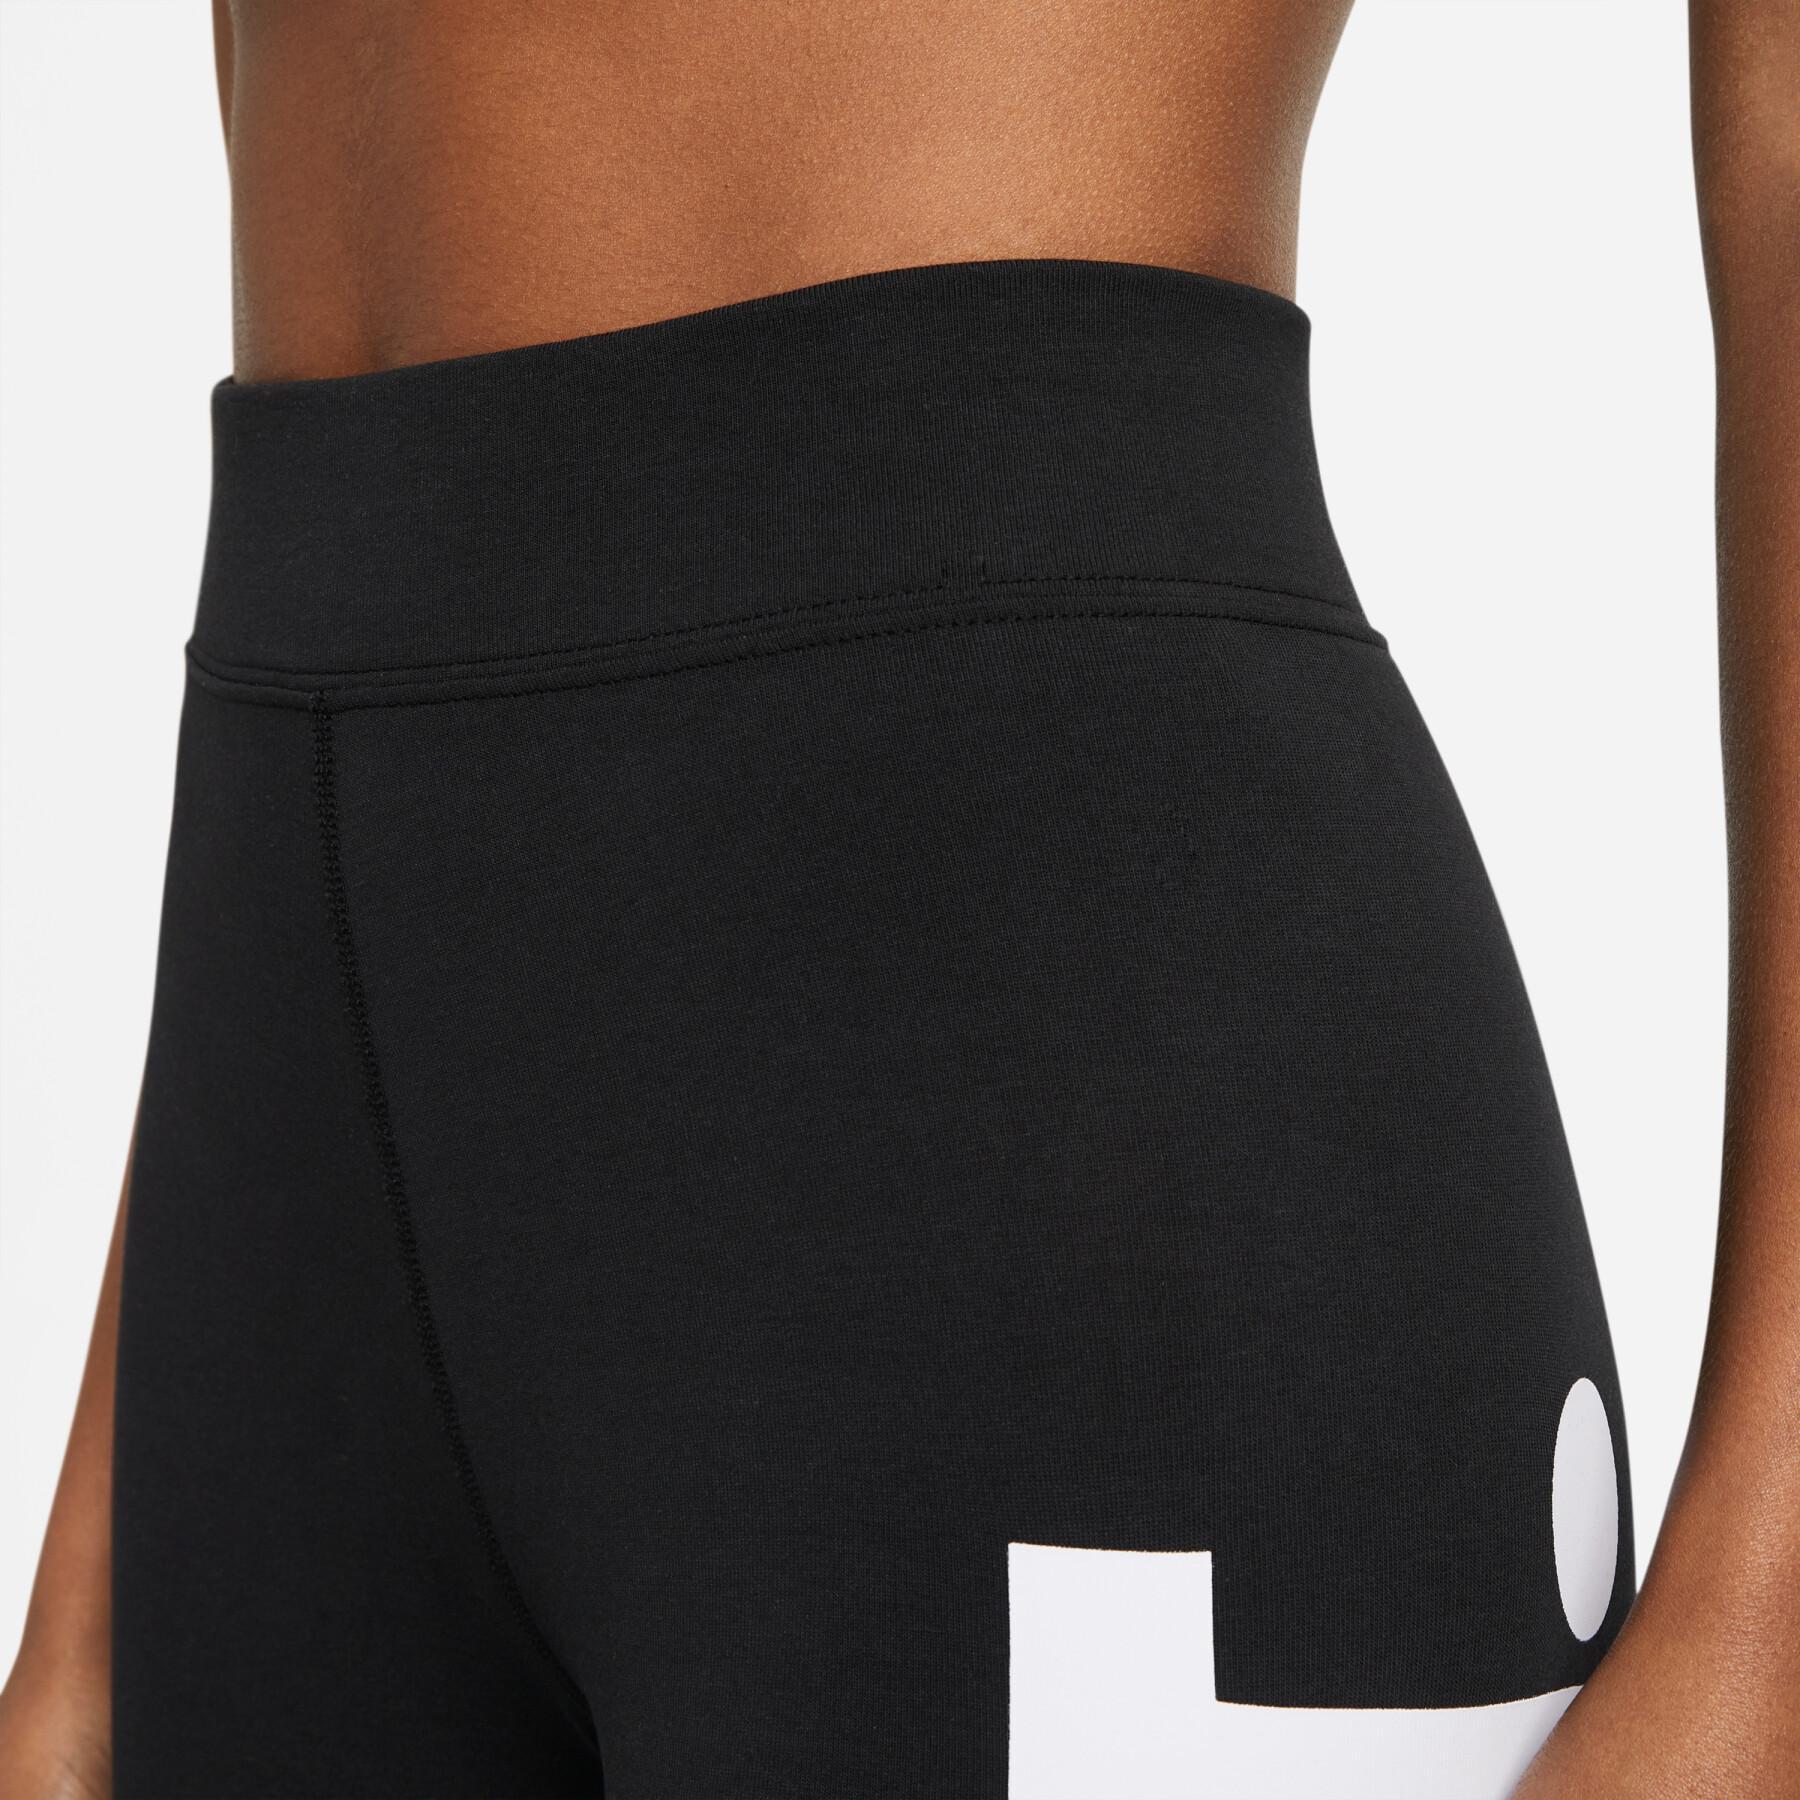 Damen-Leggings Nike sportswear essential